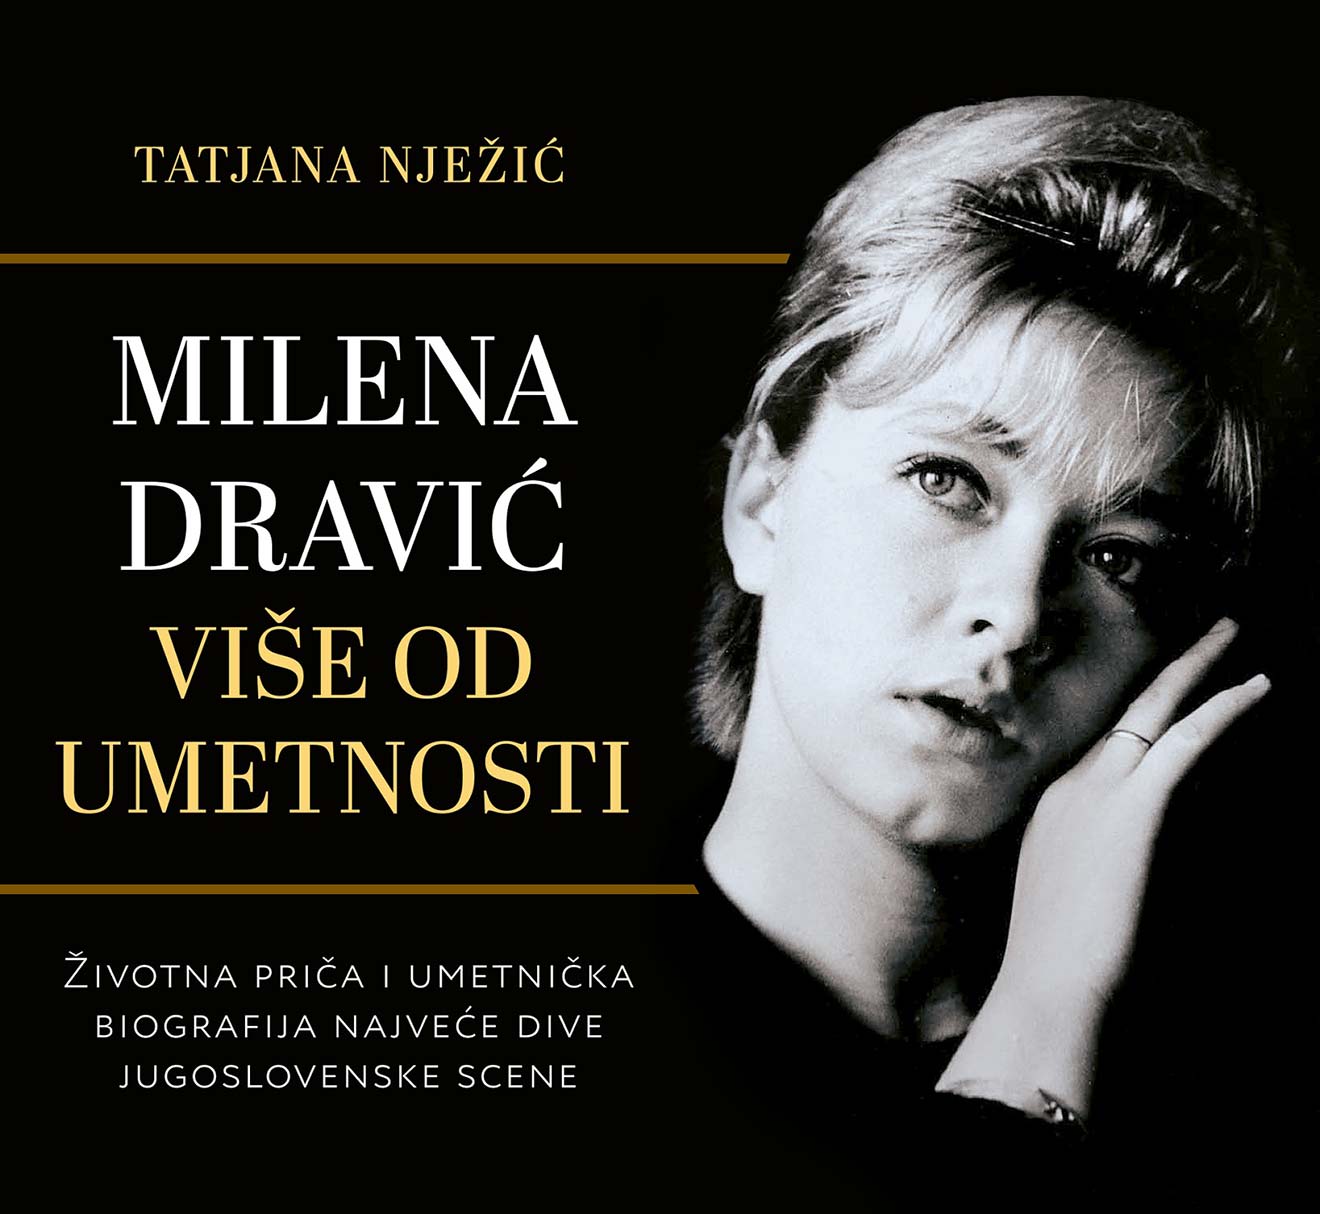 Milena-Dravic-Vise od umetnosti-feat